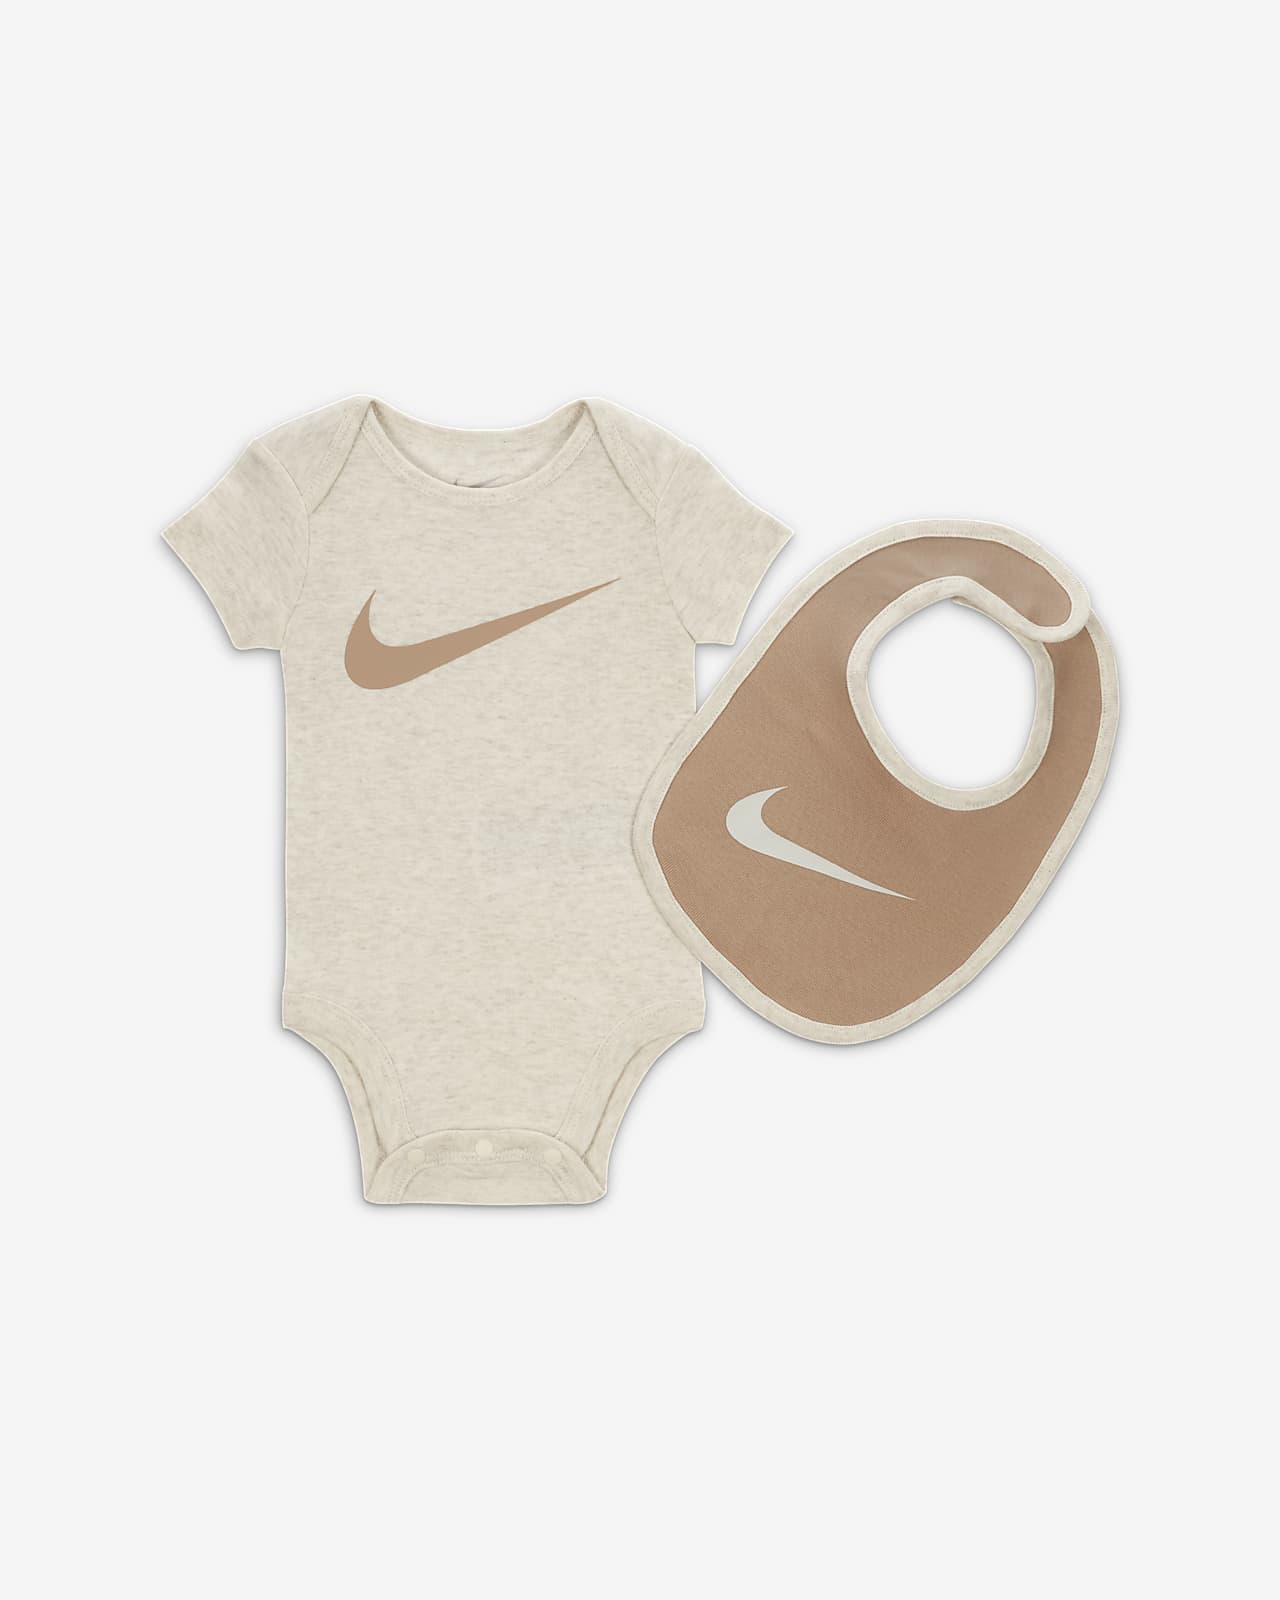 Nuevo significado árabe Prehistórico Nike 5-Piece Gift Set Baby 5-Piece Boxed Gift Set. Nike.com